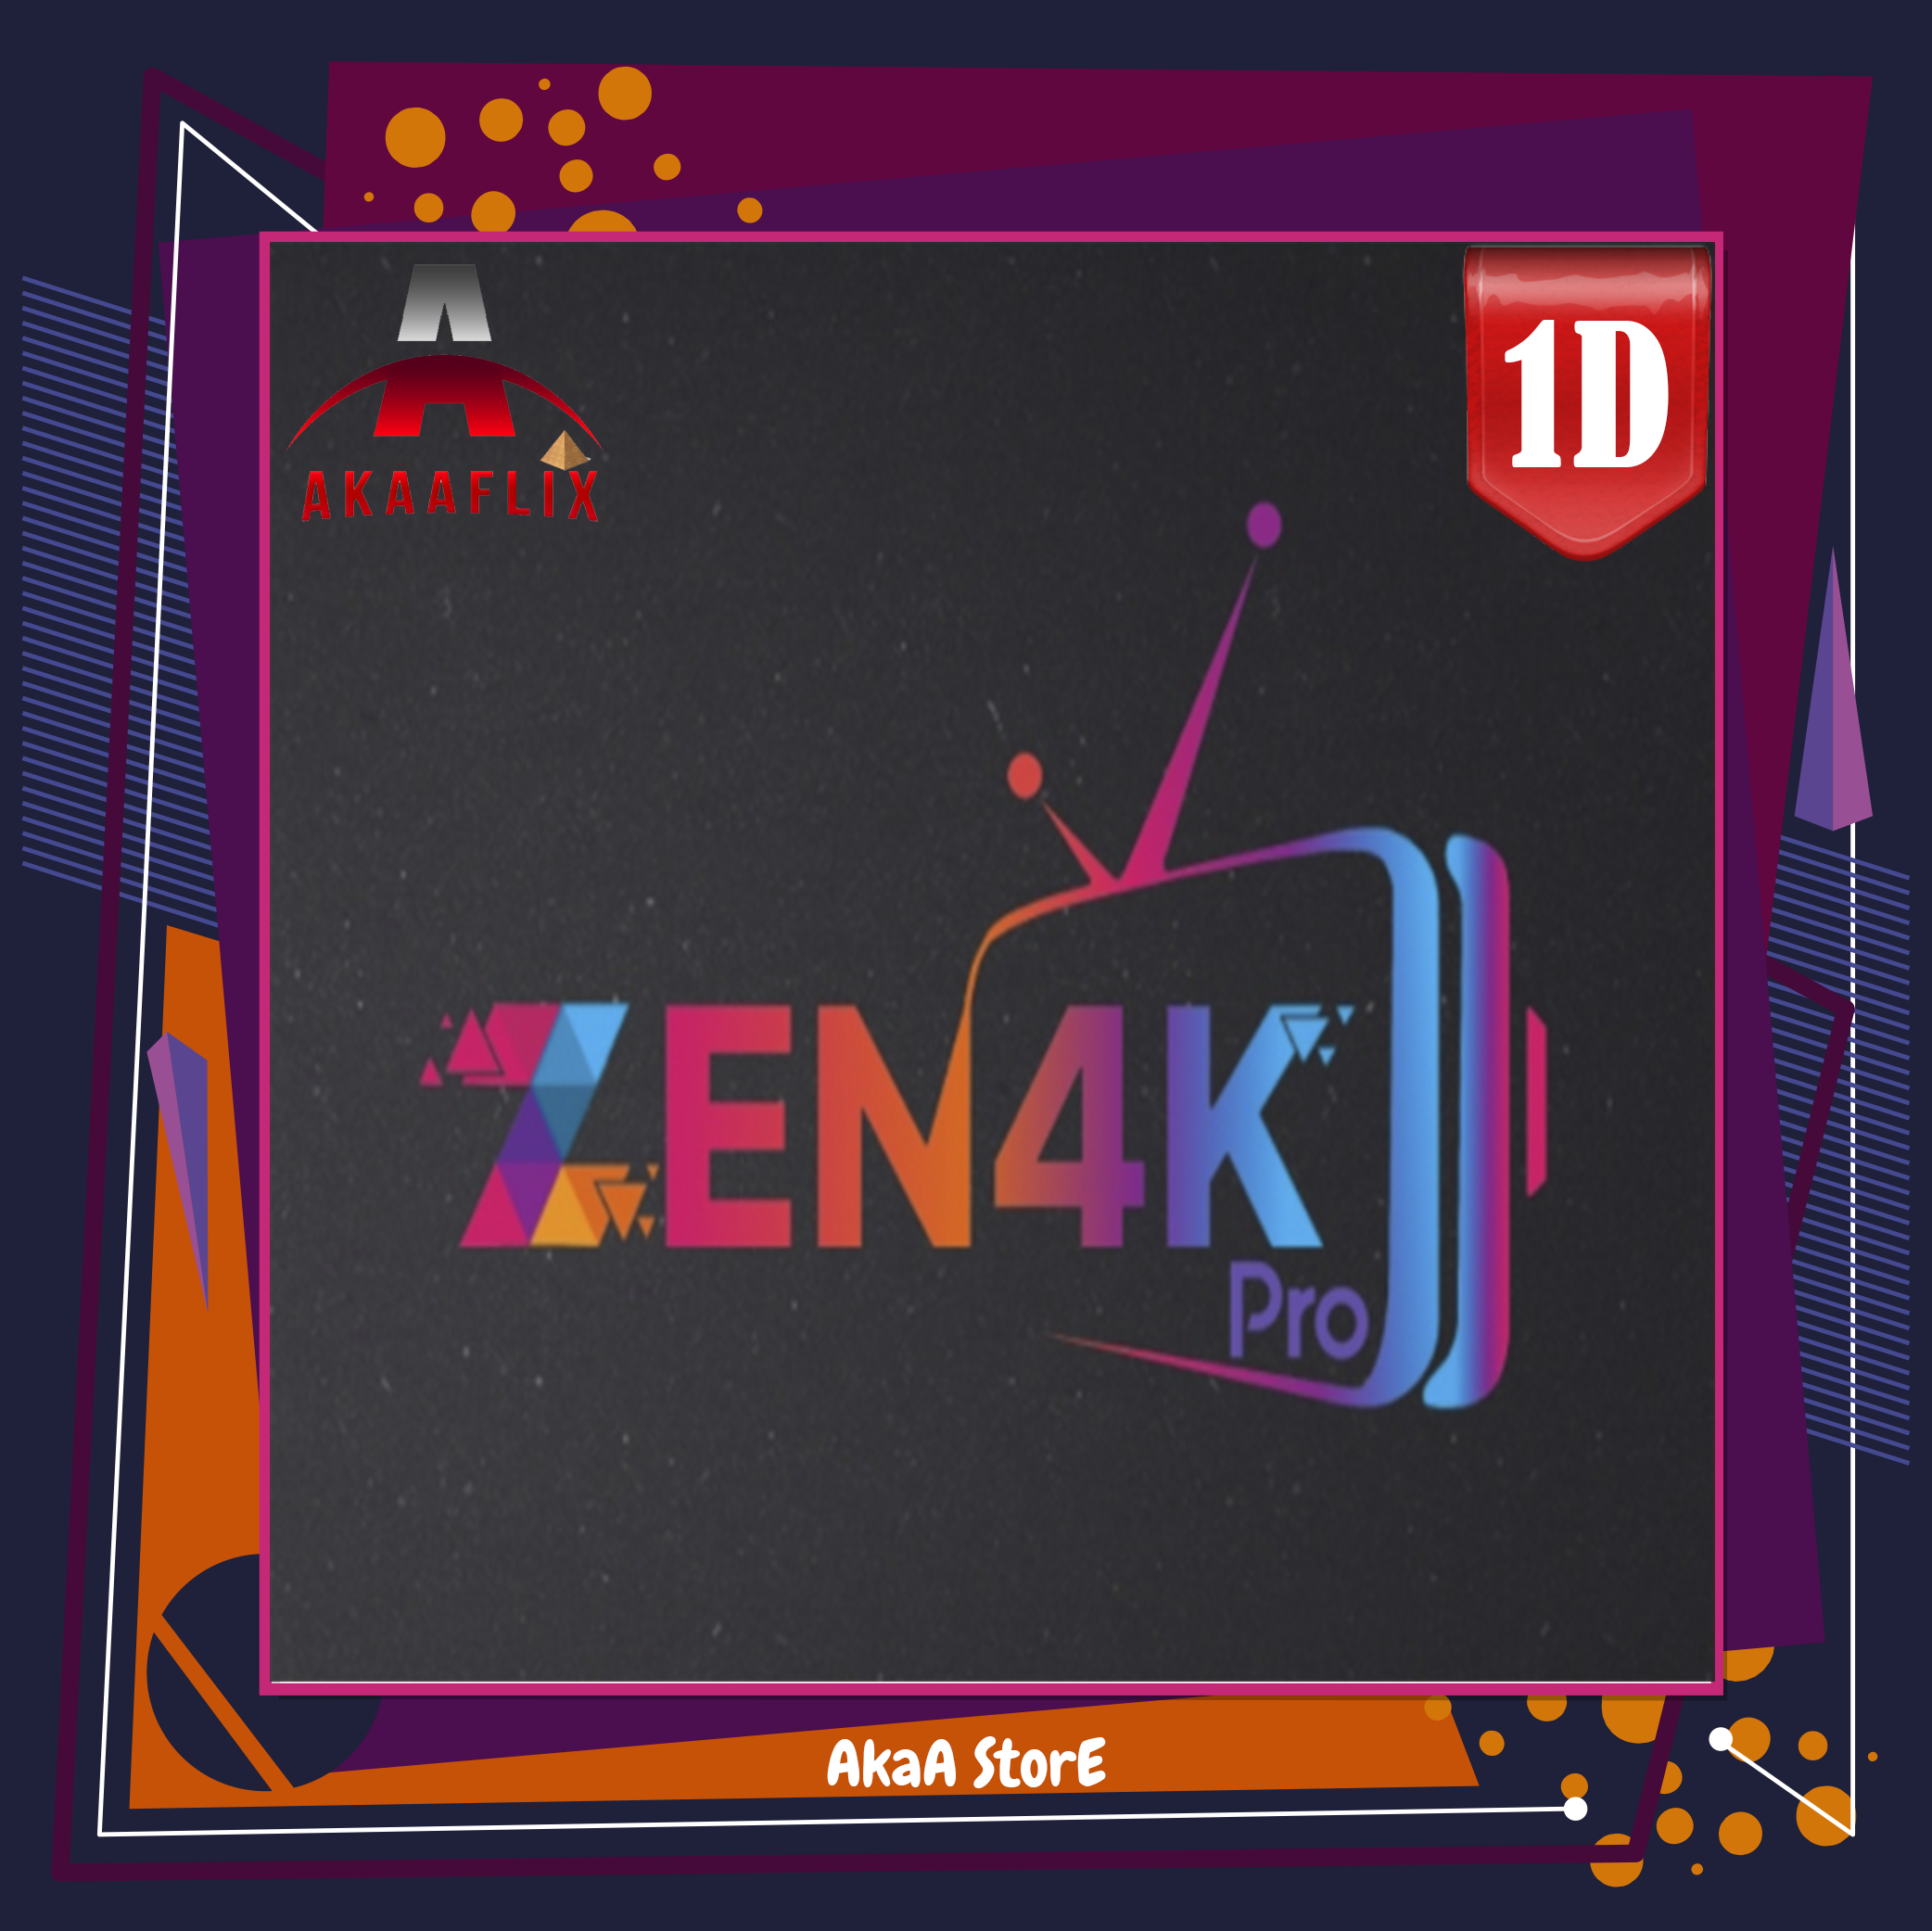 تجربة ZEN4K زين 24 ساعة